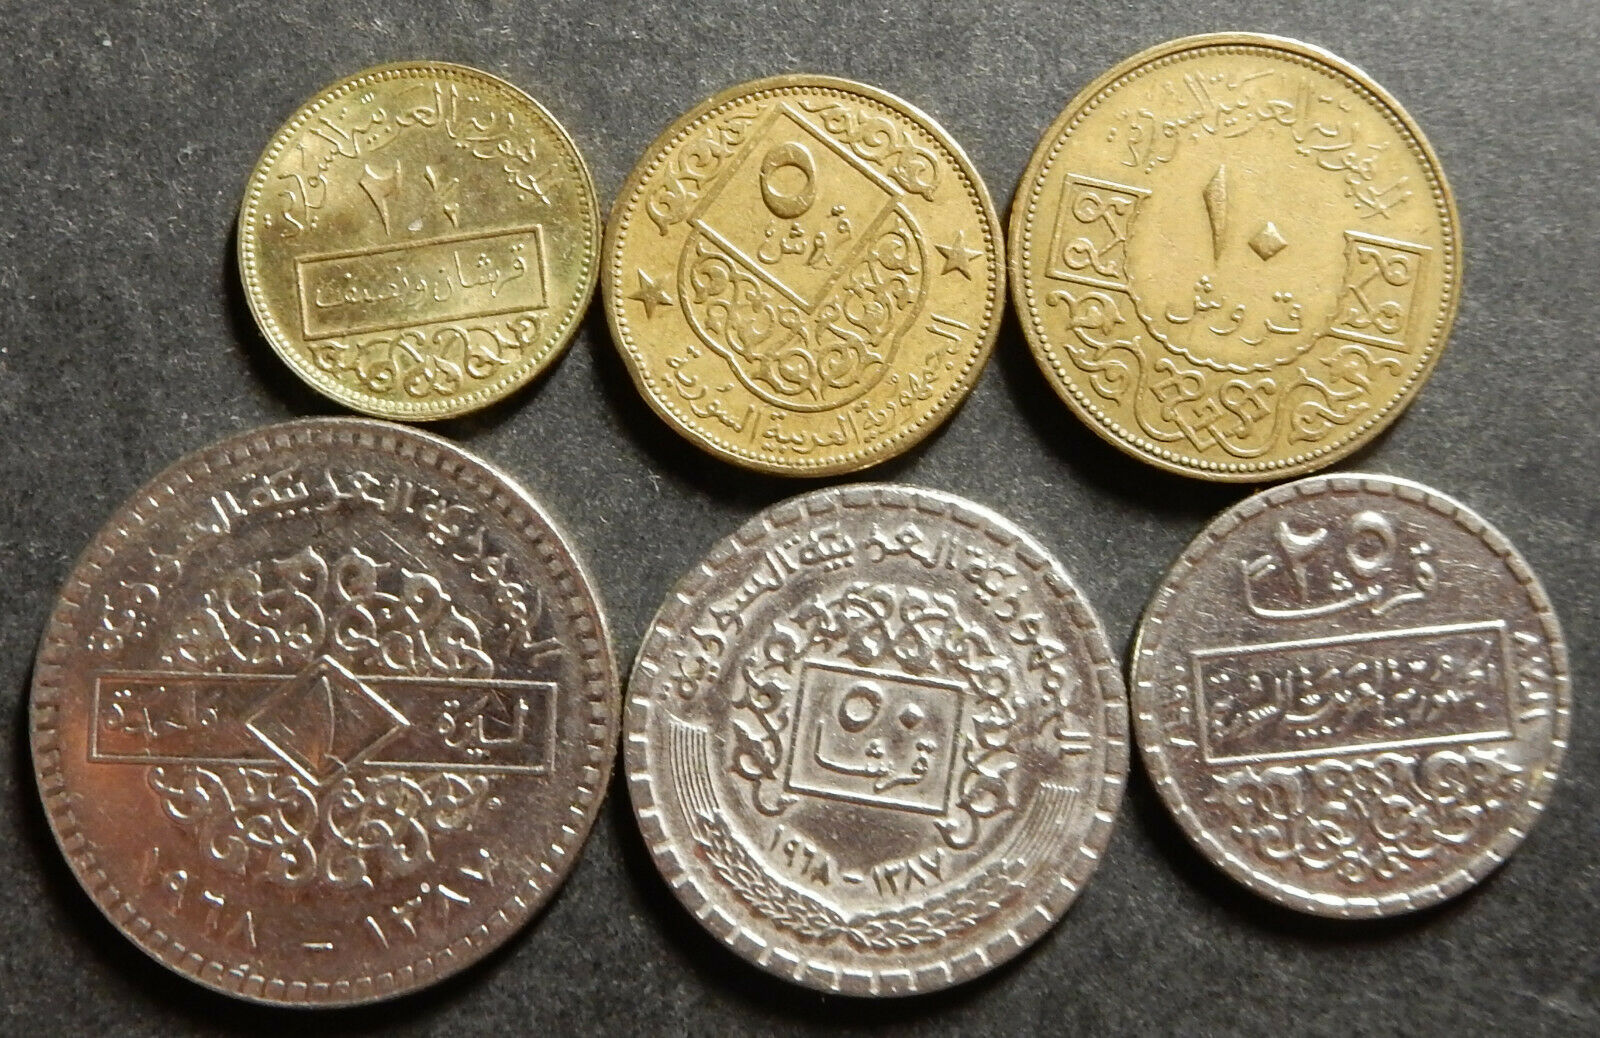 Syria Complete Set 2½+5+10+25+50 Piastres + 1 Pound 1965 1968 High Grade Rare